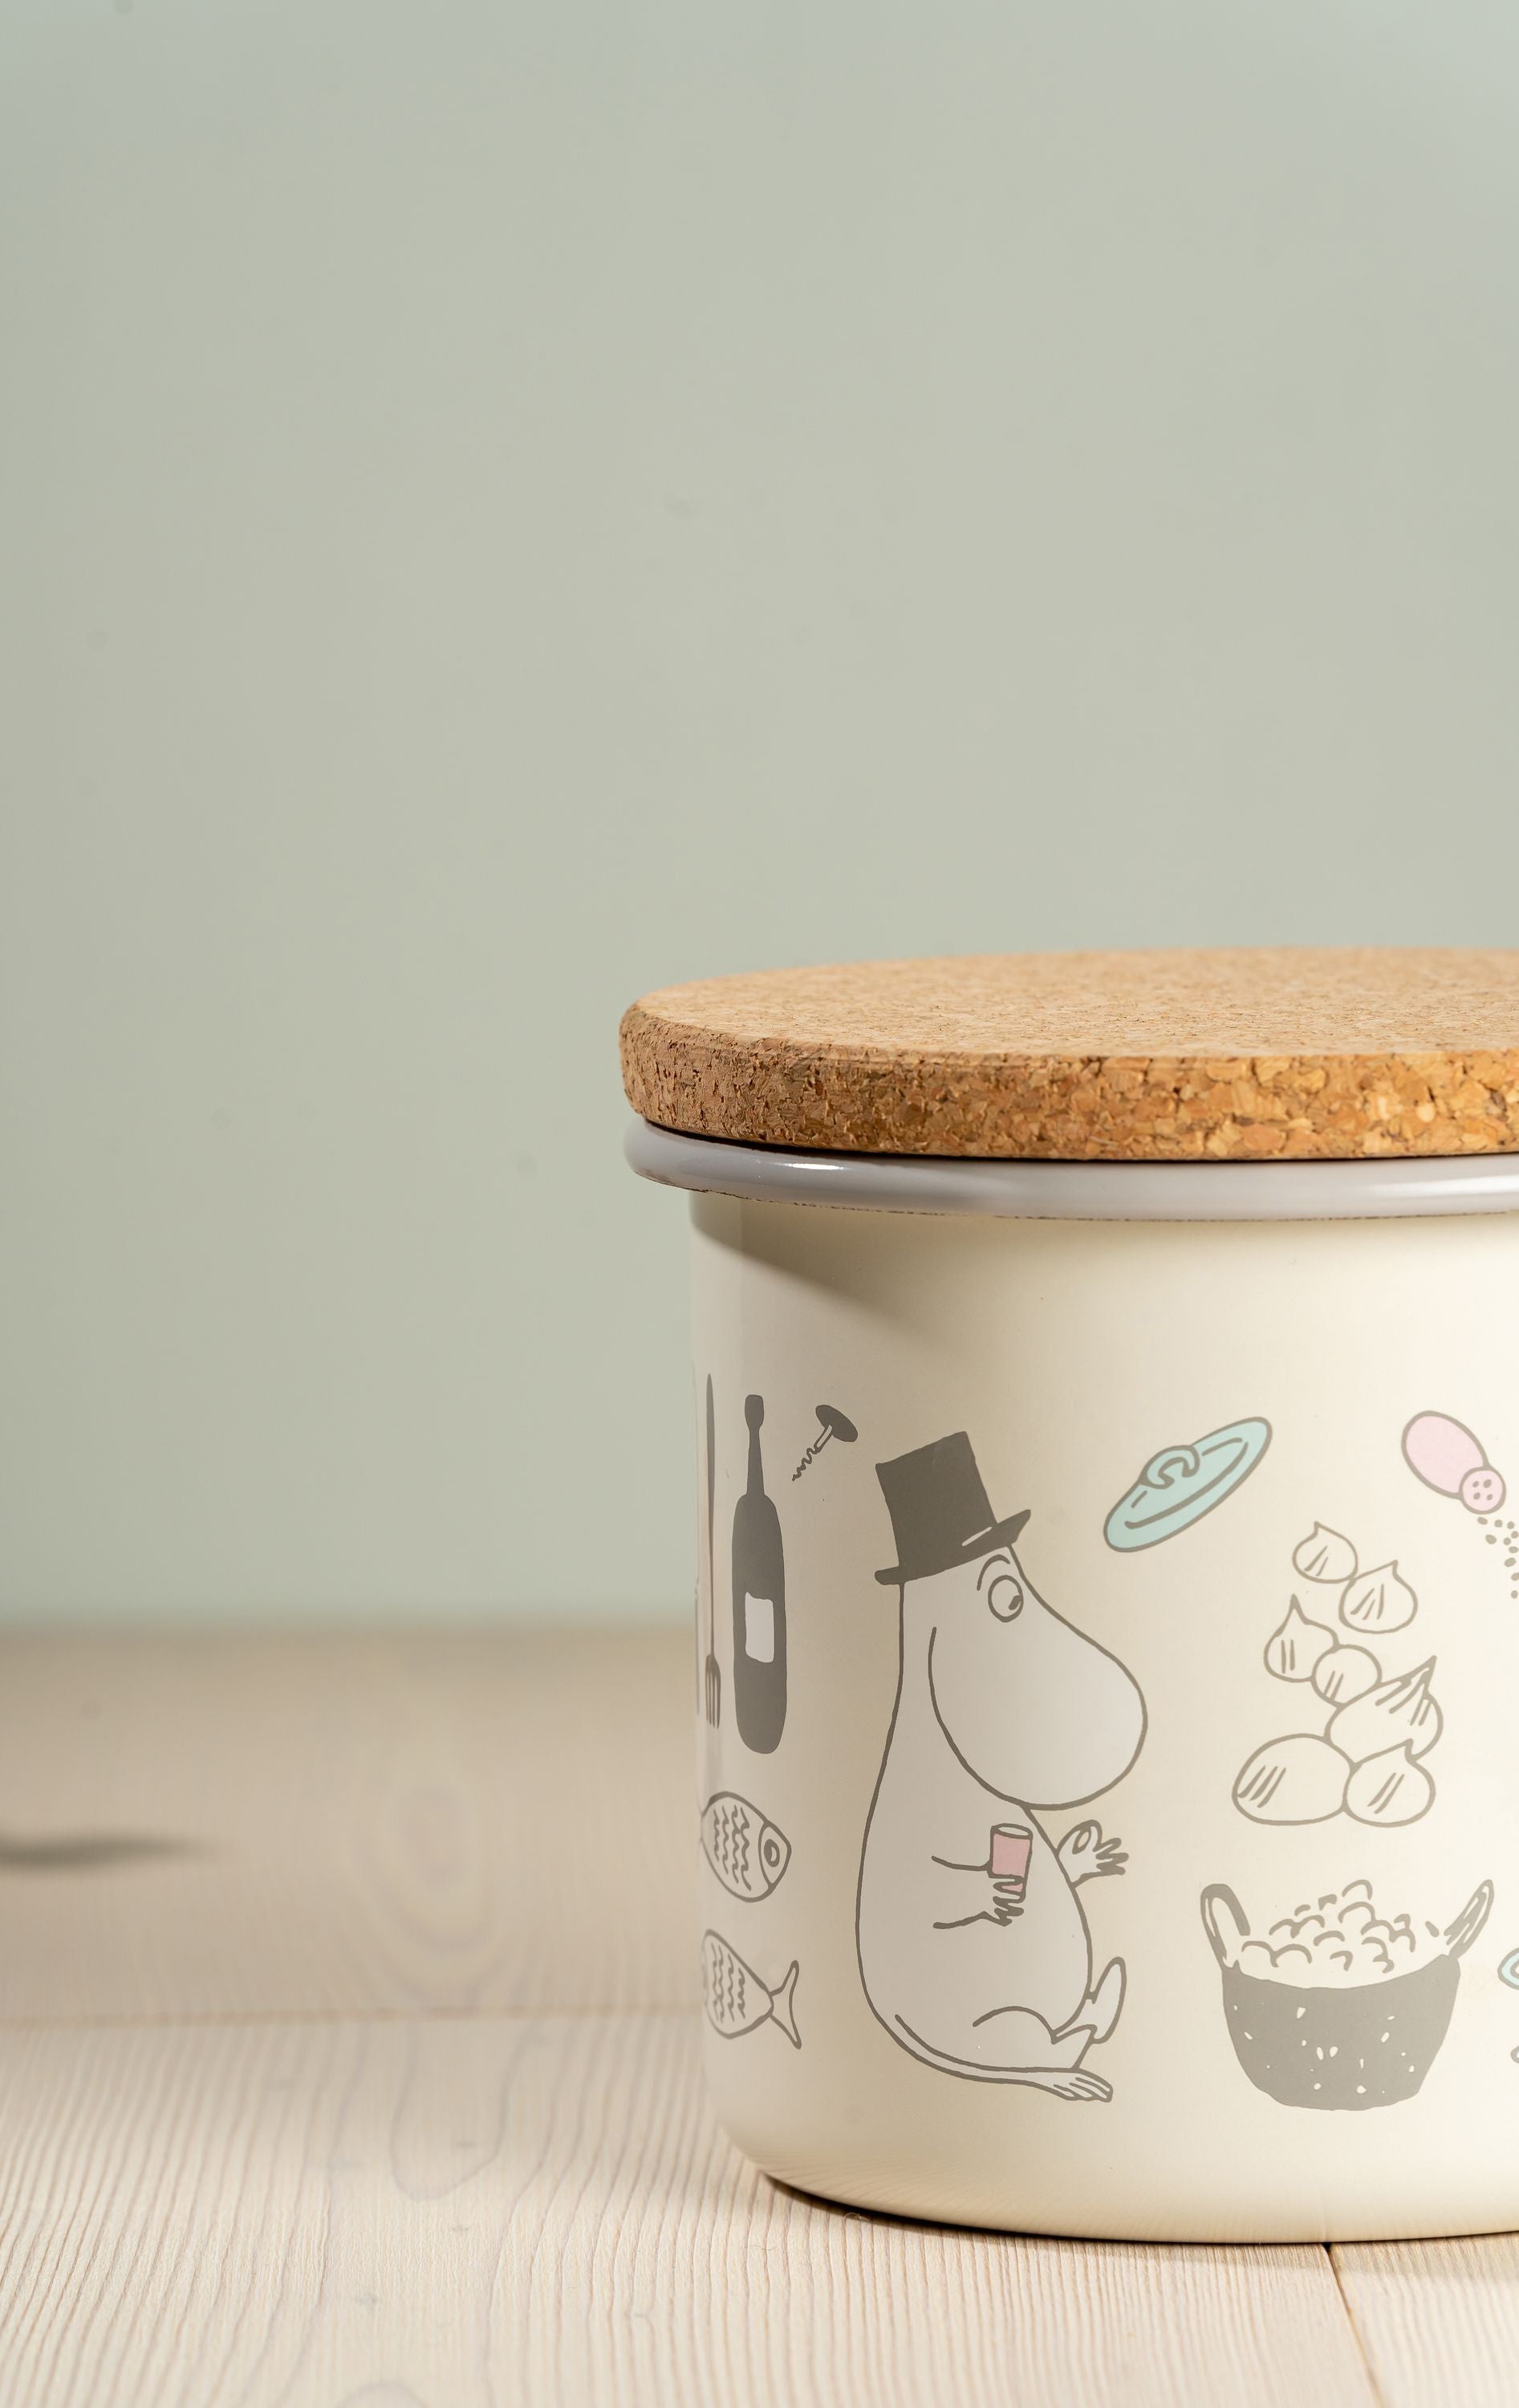 Muurla Moomin Bon Appétit email Jar met kurkdeksel